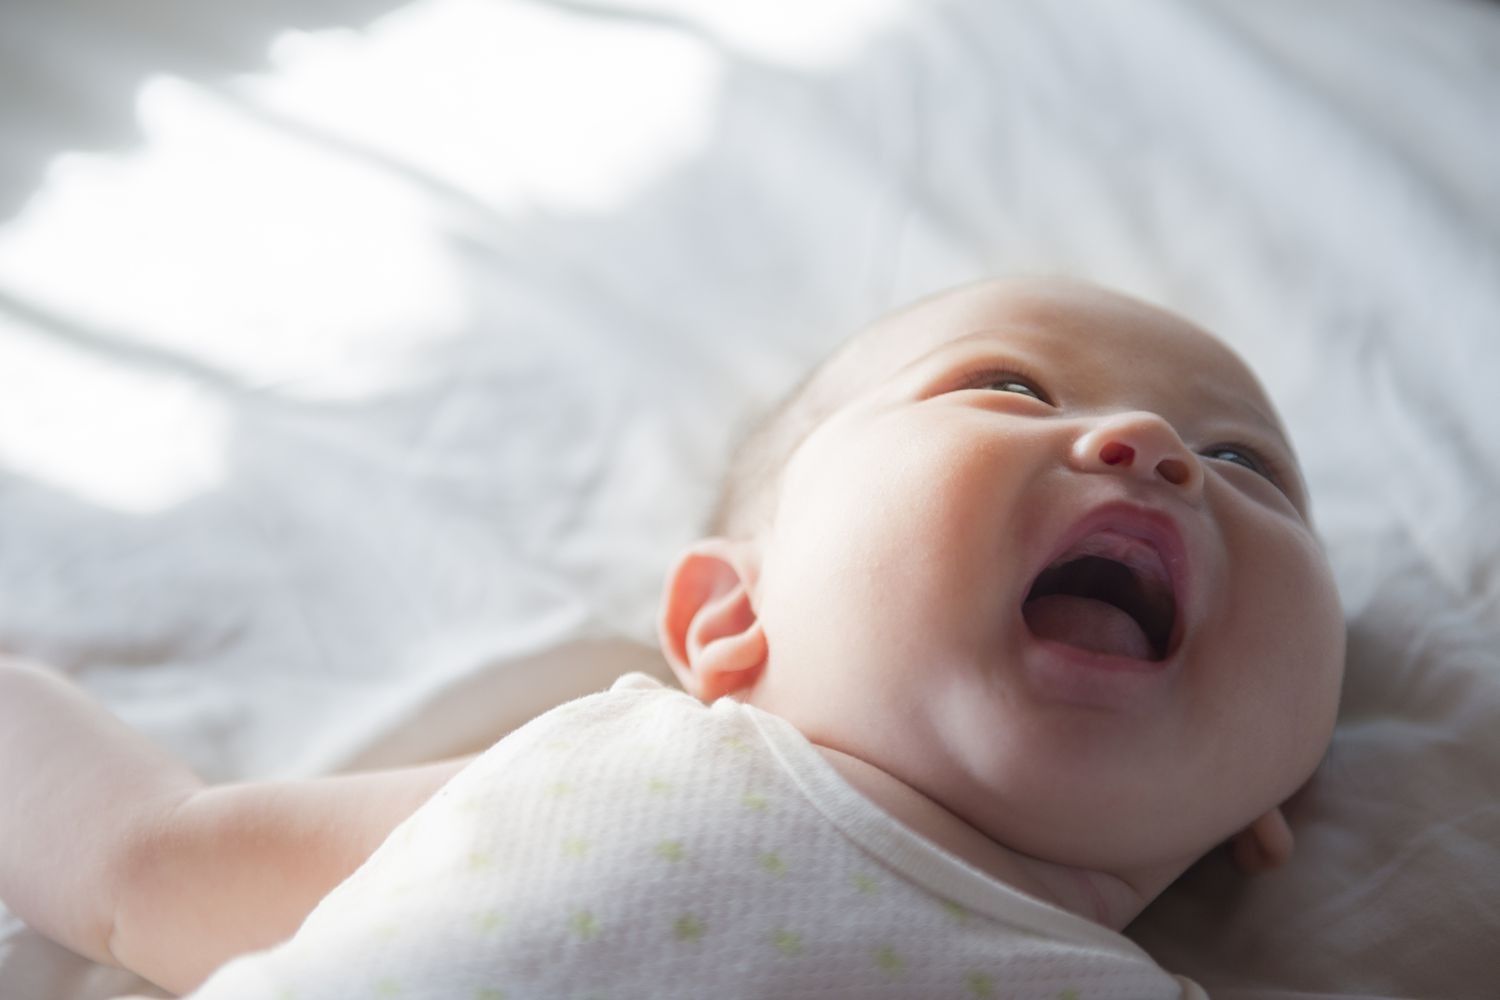 Sự phát triển của trẻ 1 tháng tuổi sau khi sinh như thế nào?